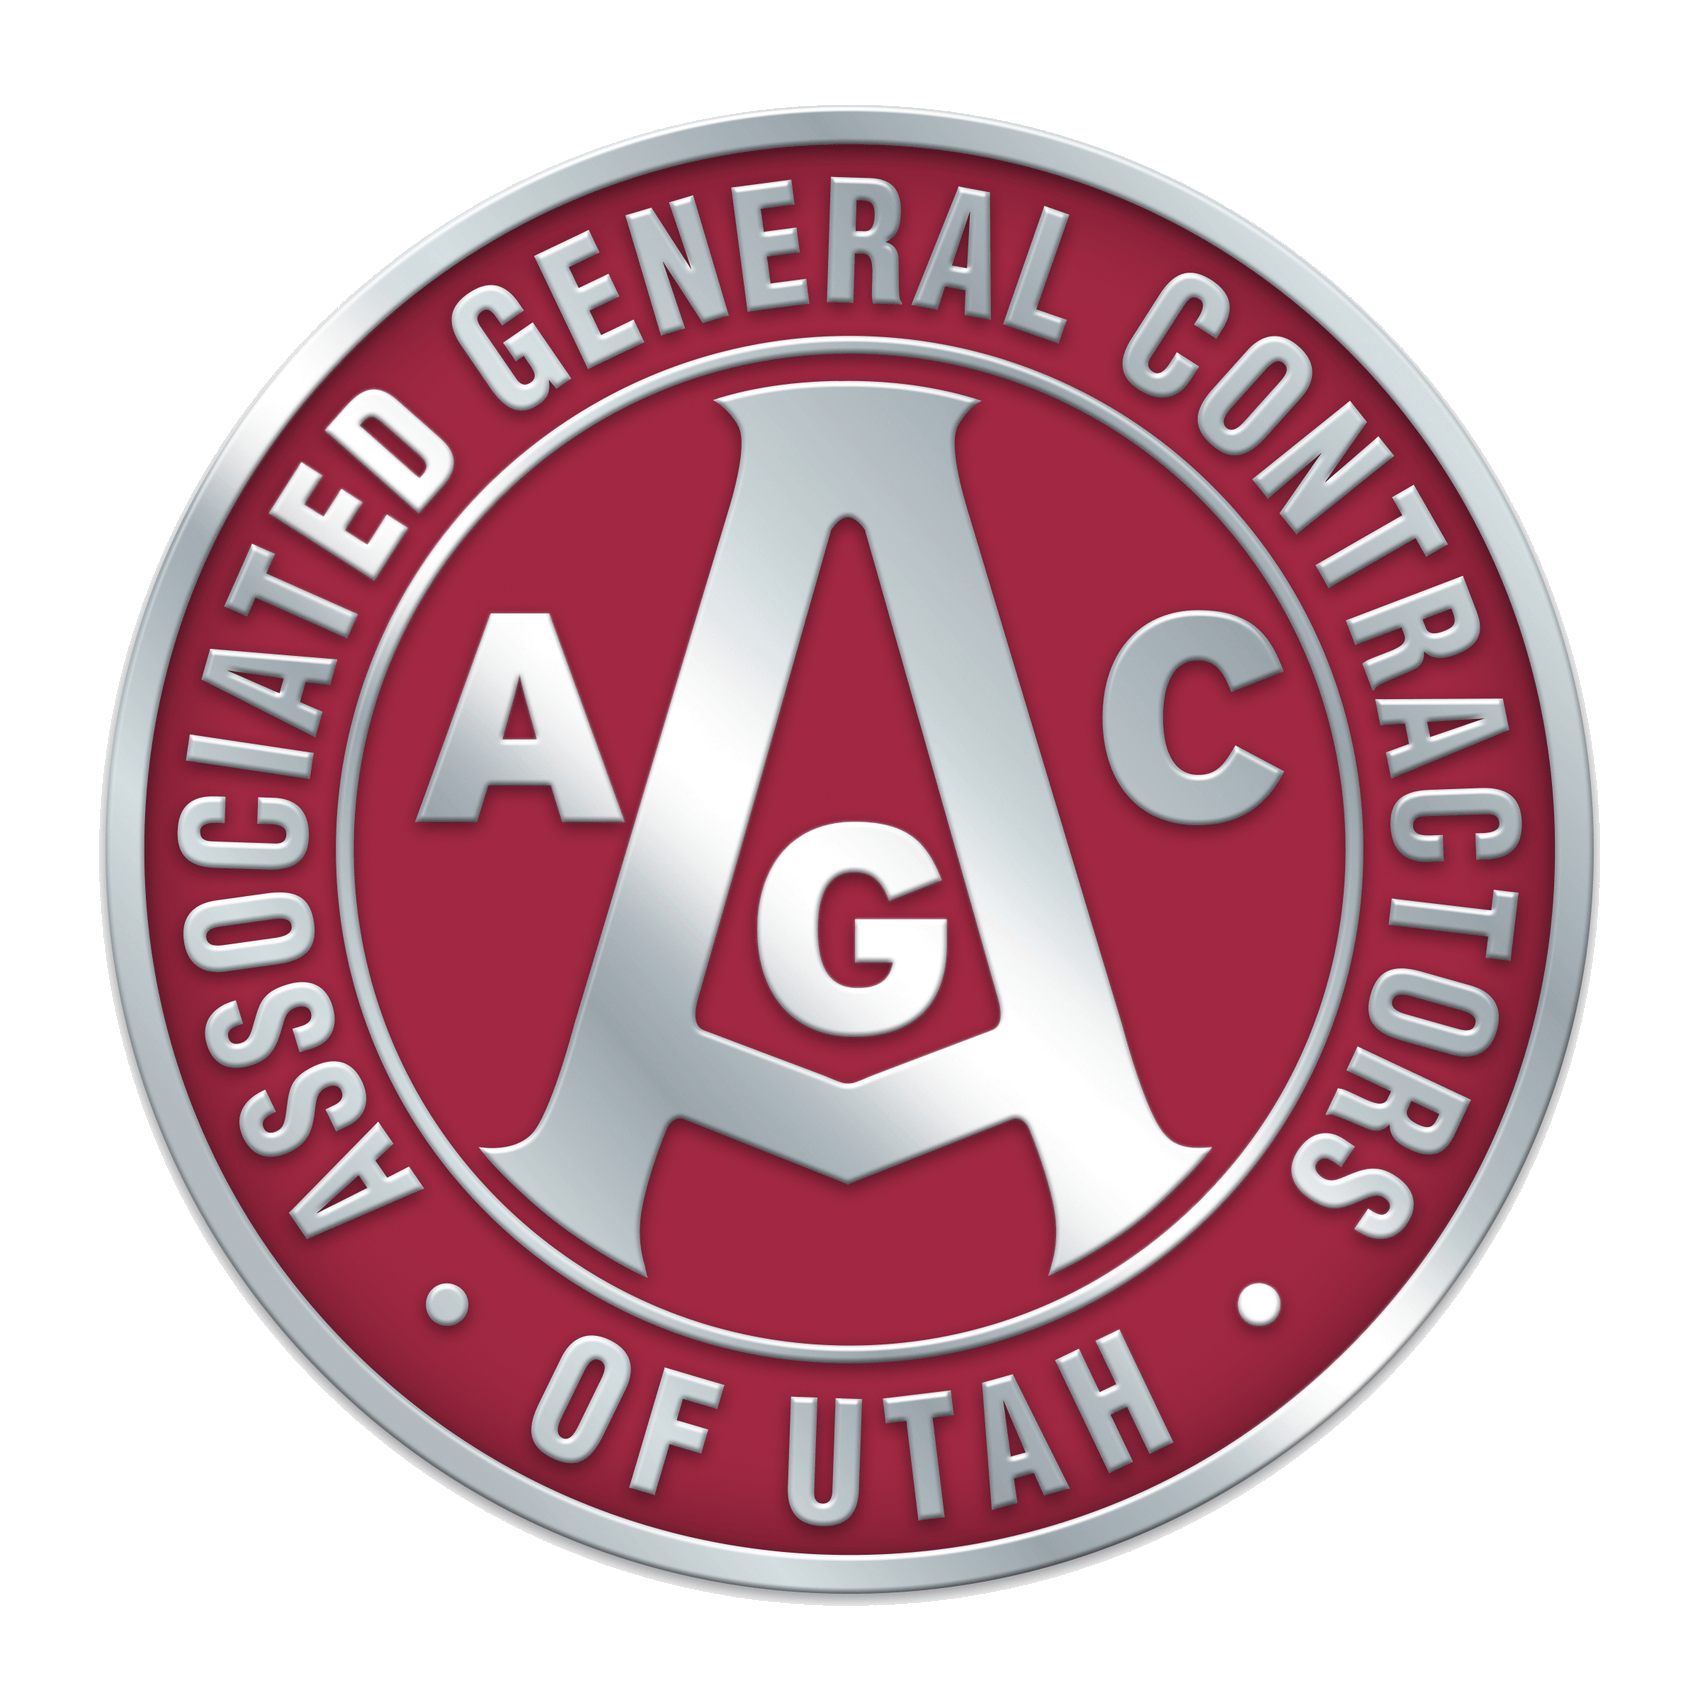 UDOT Logo - Home General Contractors of Utah, UTAH